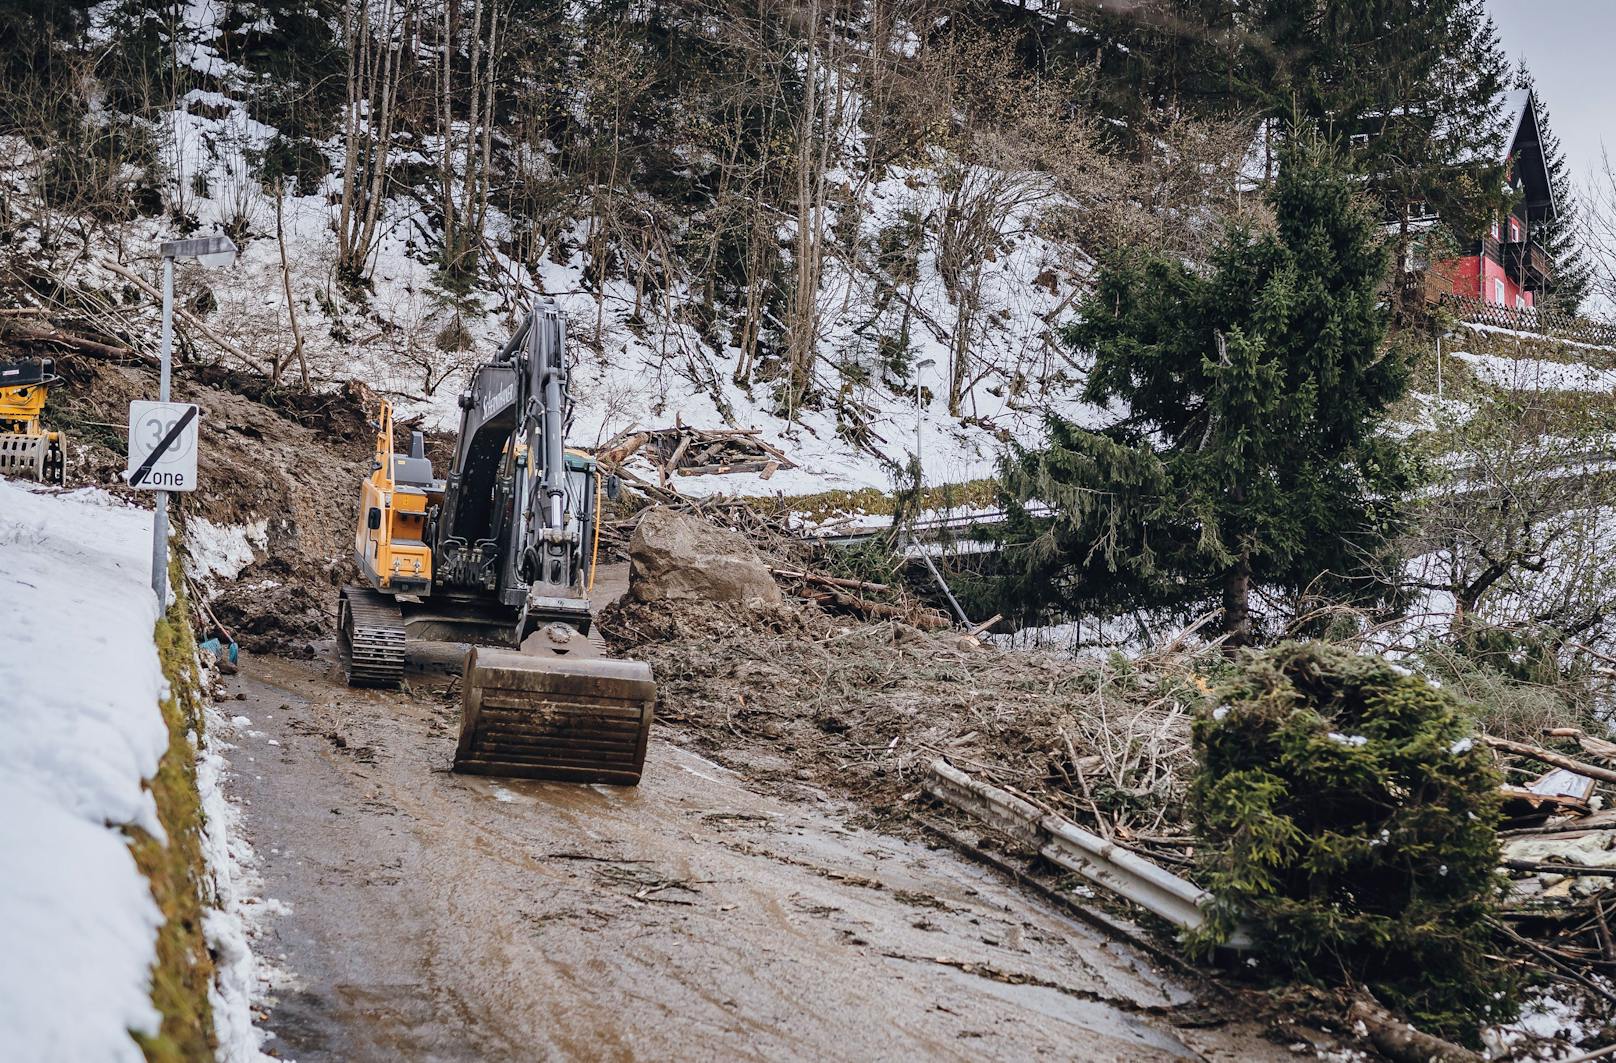 Regenfälle sorgen für gefährlichen Hangrutsch in Tirol